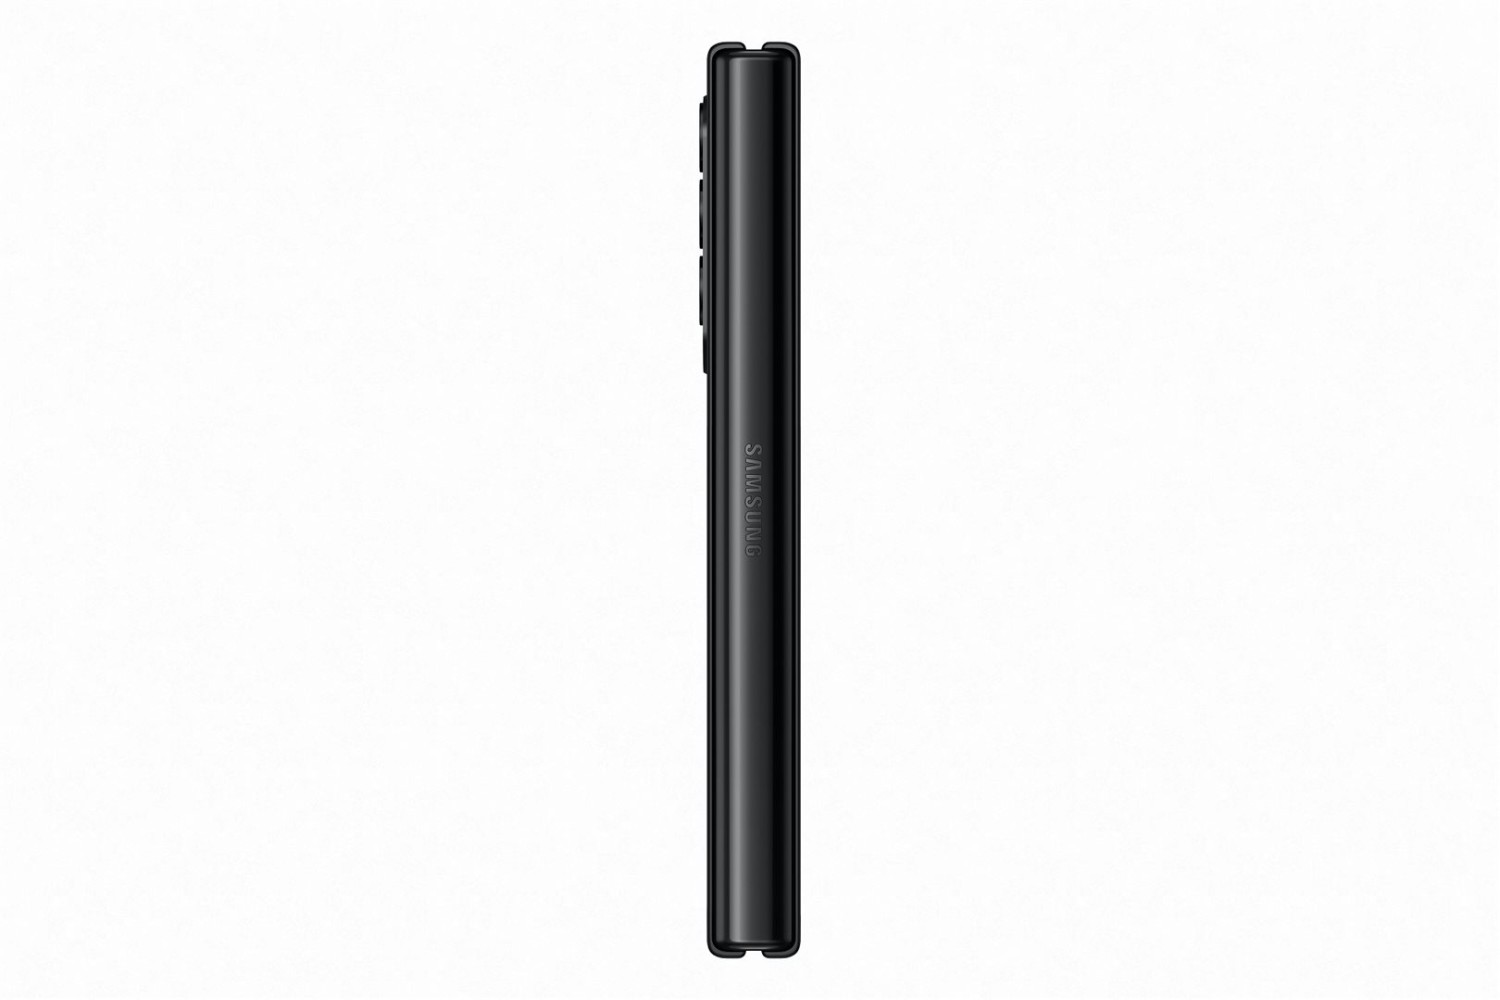 Samsung Galaxy Z Fold3 5G (SM-F926) 12GB/256GB černá